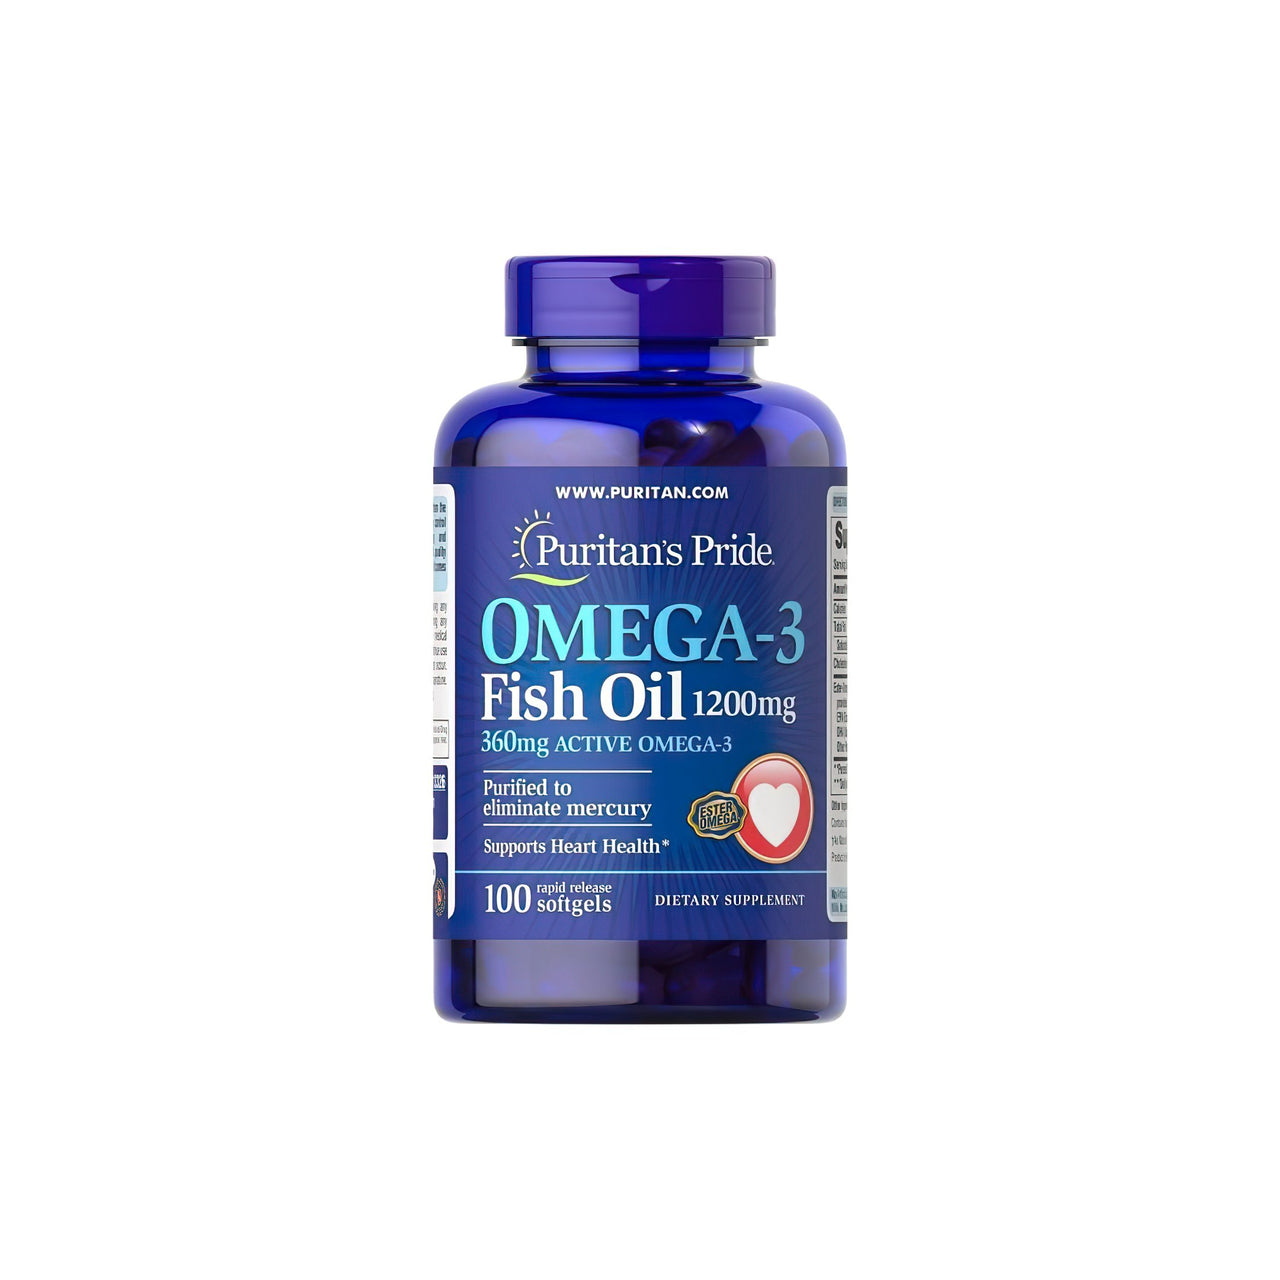 Un integratore di olio di pesce Omega-3 da 1200 mg (360 mg di Omega-3 attivo) in 100 softgel di Puritan's Pride per la salute cardiovascolare e la funzione cognitiva.